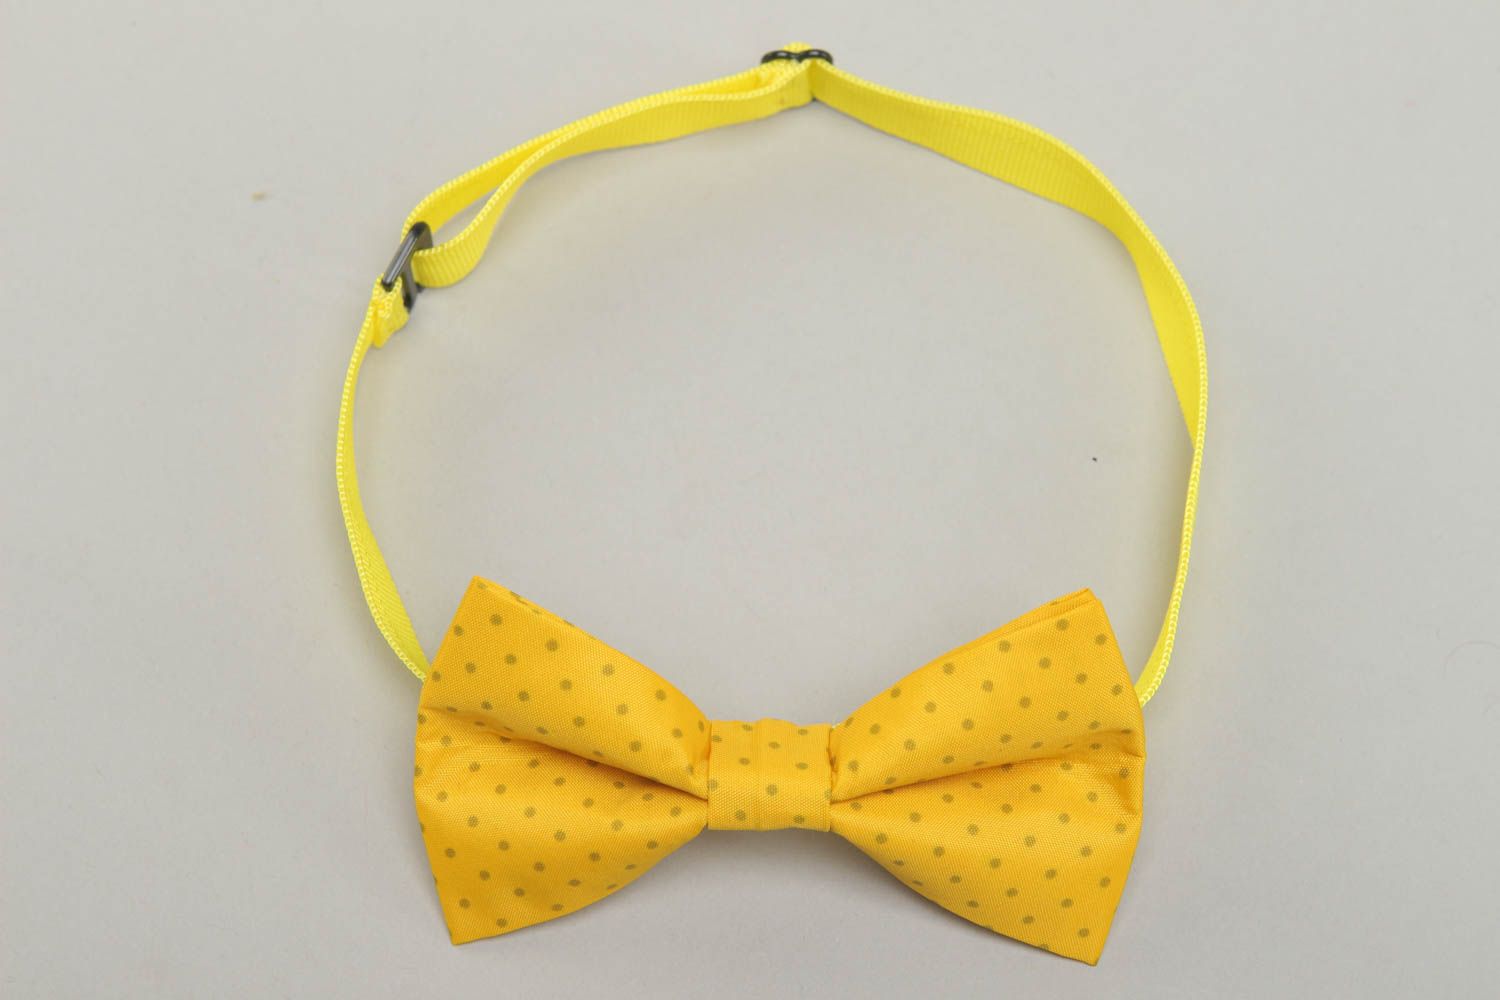 Polka dot yellow cotton fabric bow tie photo 1